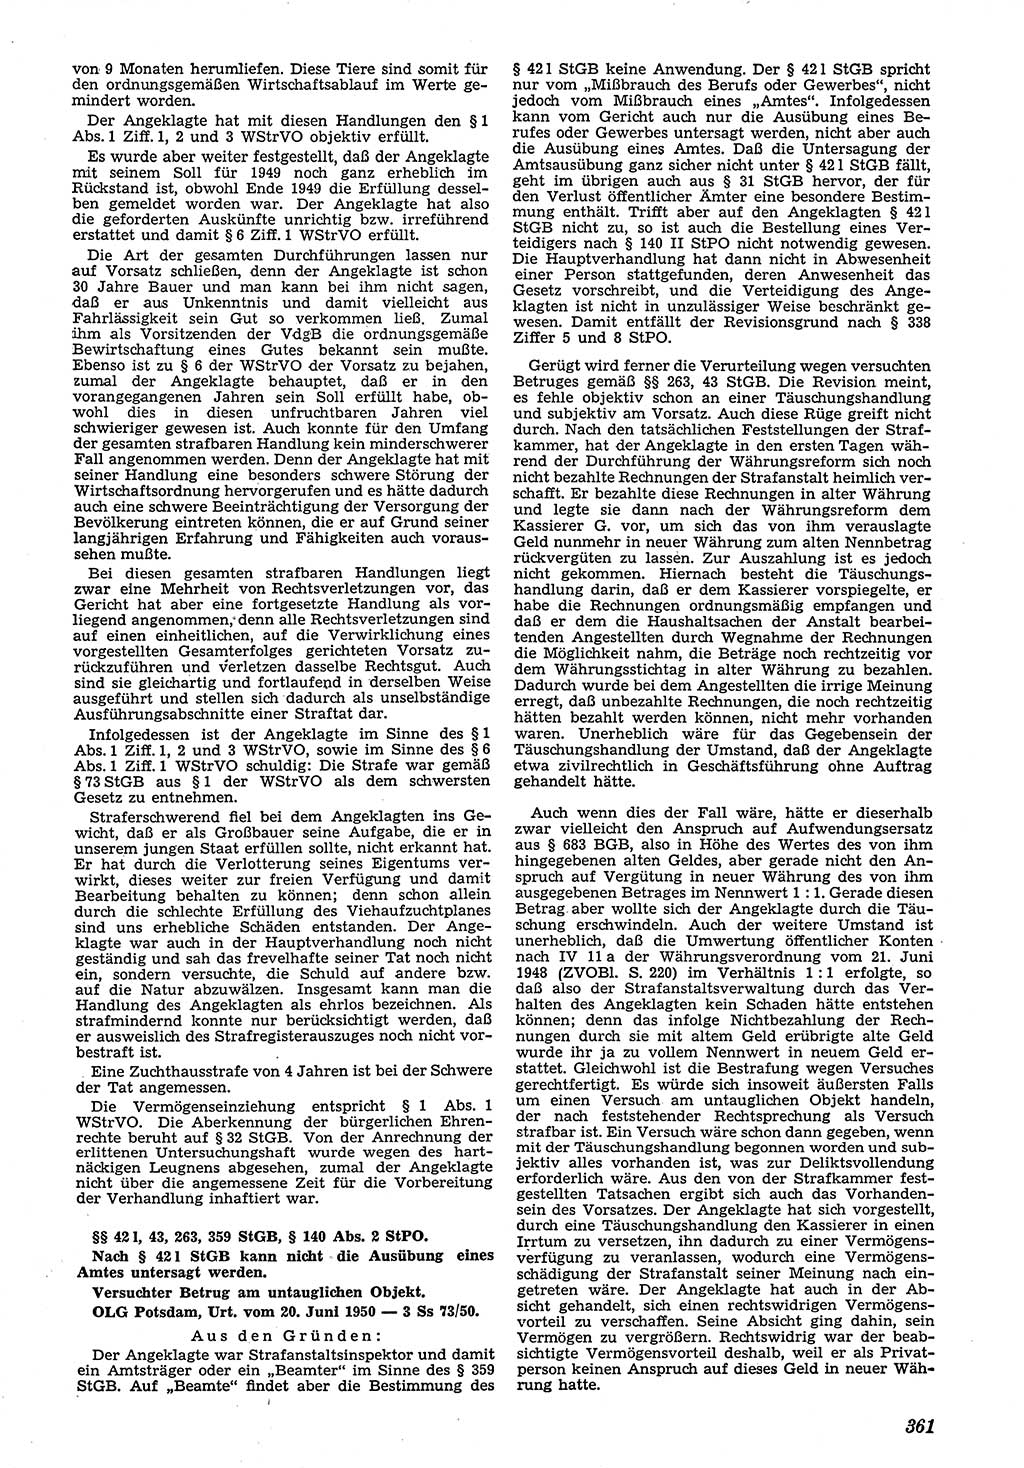 Neue Justiz (NJ), Zeitschrift für Recht und Rechtswissenschaft [Deutsche Demokratische Republik (DDR)], 4. Jahrgang 1950, Seite 361 (NJ DDR 1950, S. 361)